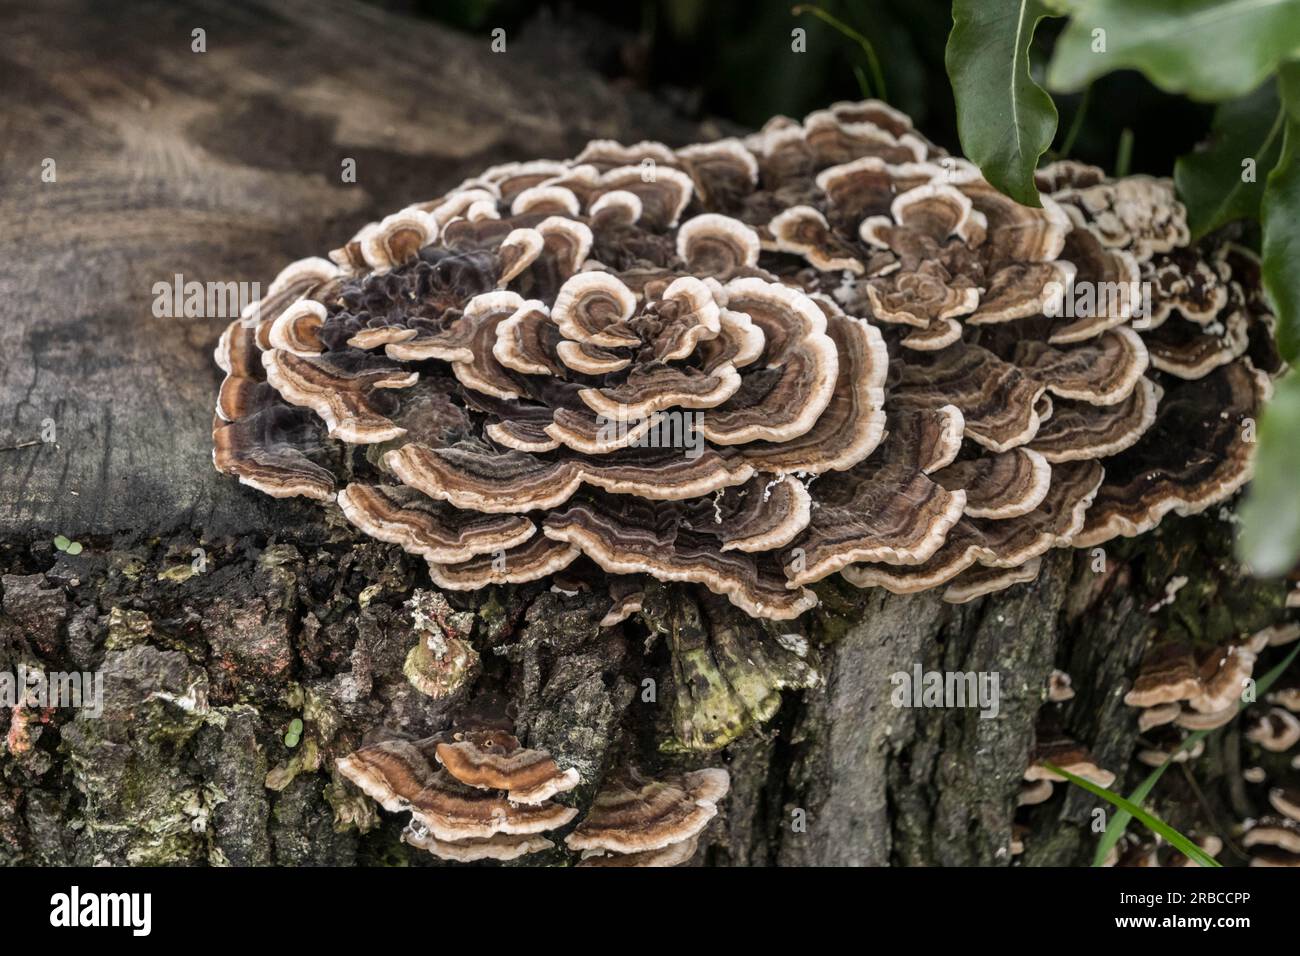 Turkey tail Fungus - Trametes versicolor. Stock Photo